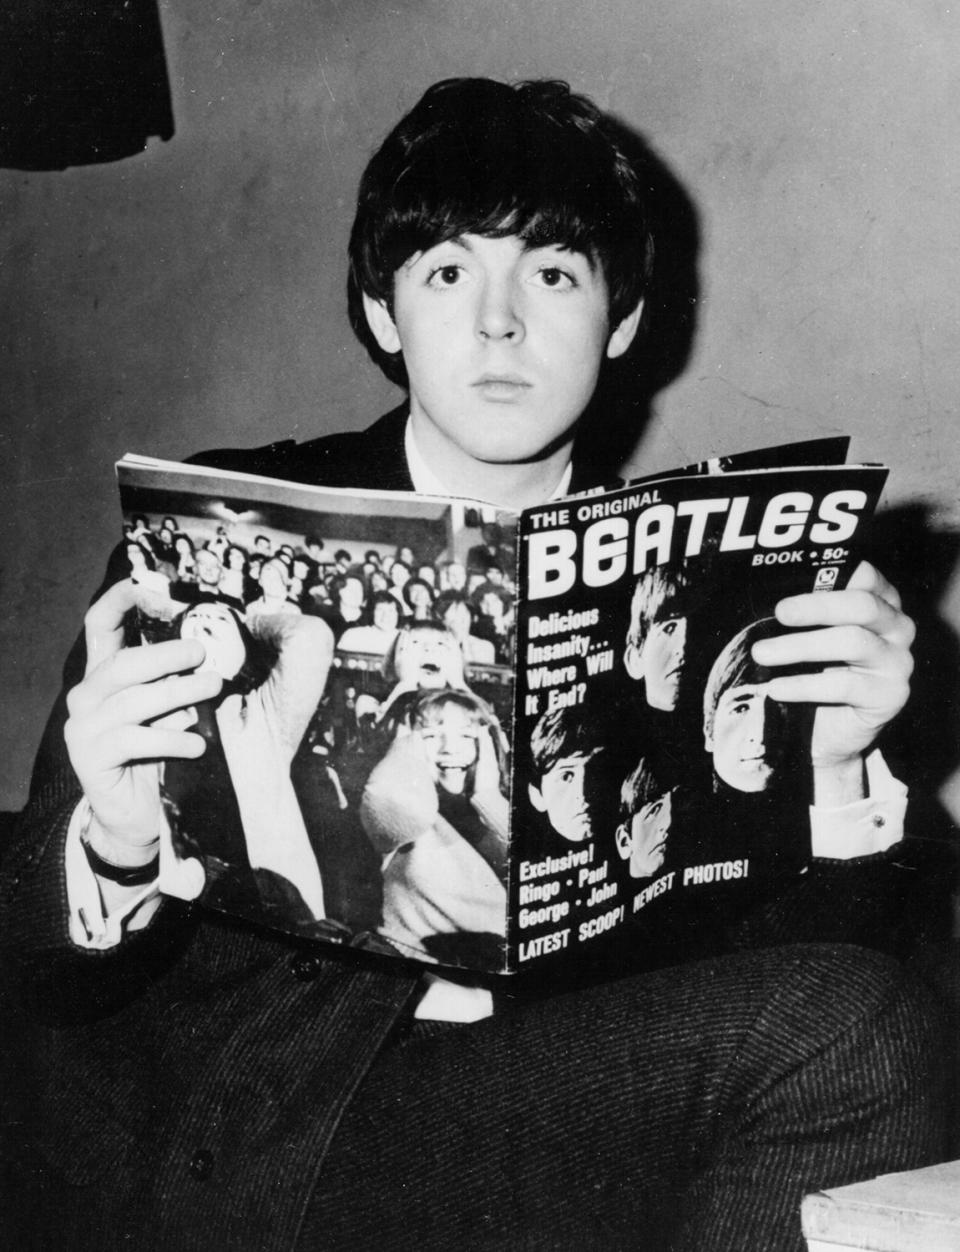 Paul McCartney Throwback Photos for His Birthday